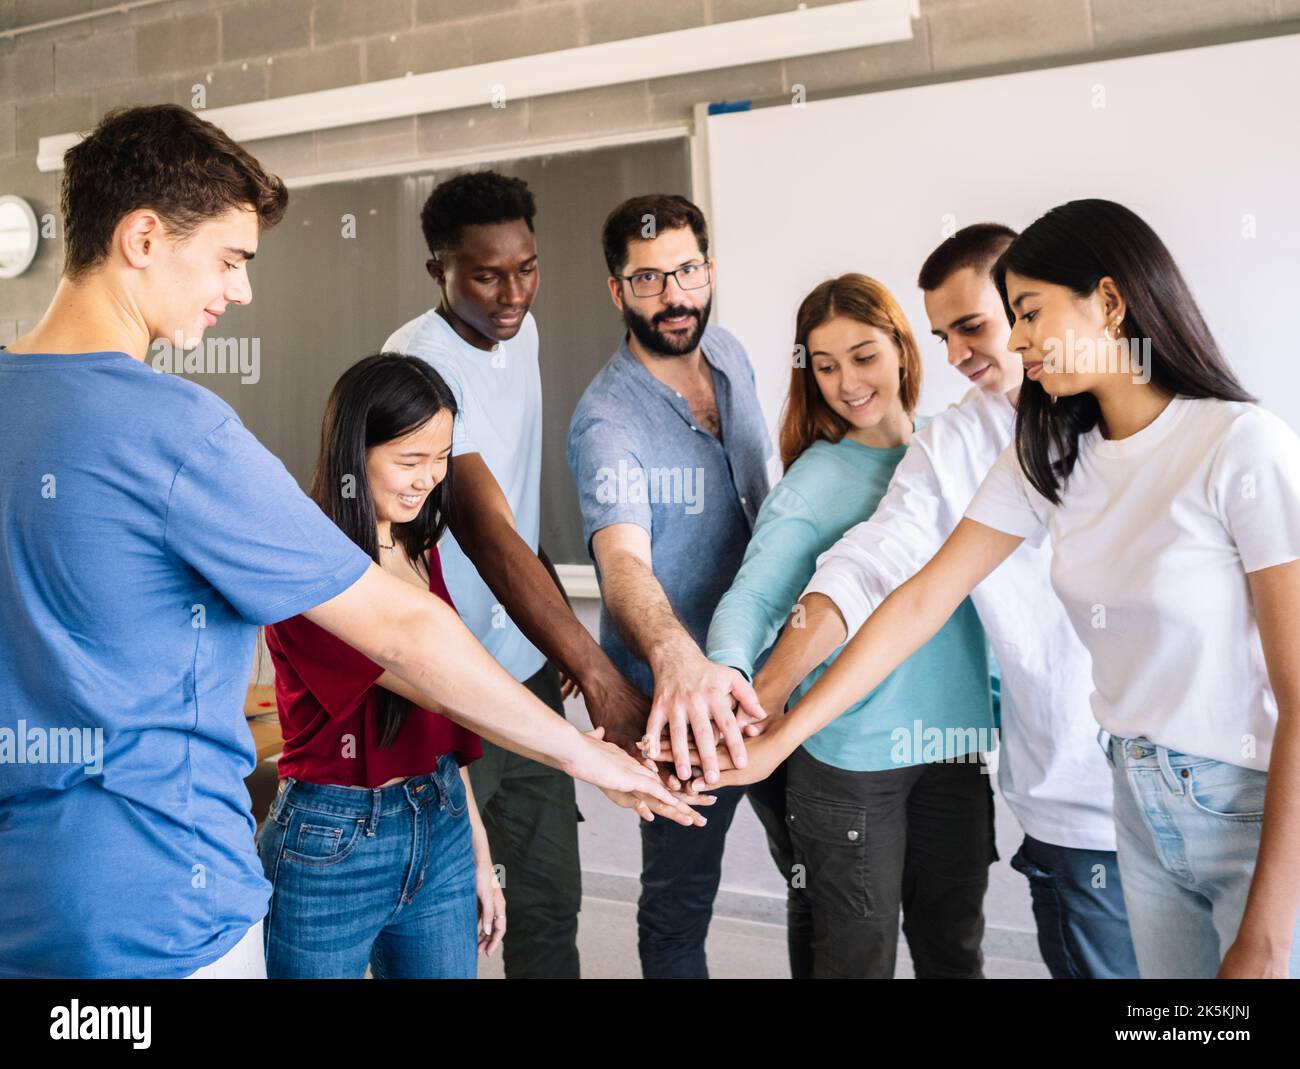 Gruppe multiethnischer Teenager, die sich mit dem Lehrer als Symbol für Zusammenarbeit und Teamarbeit die Hände schütteln Stockfoto